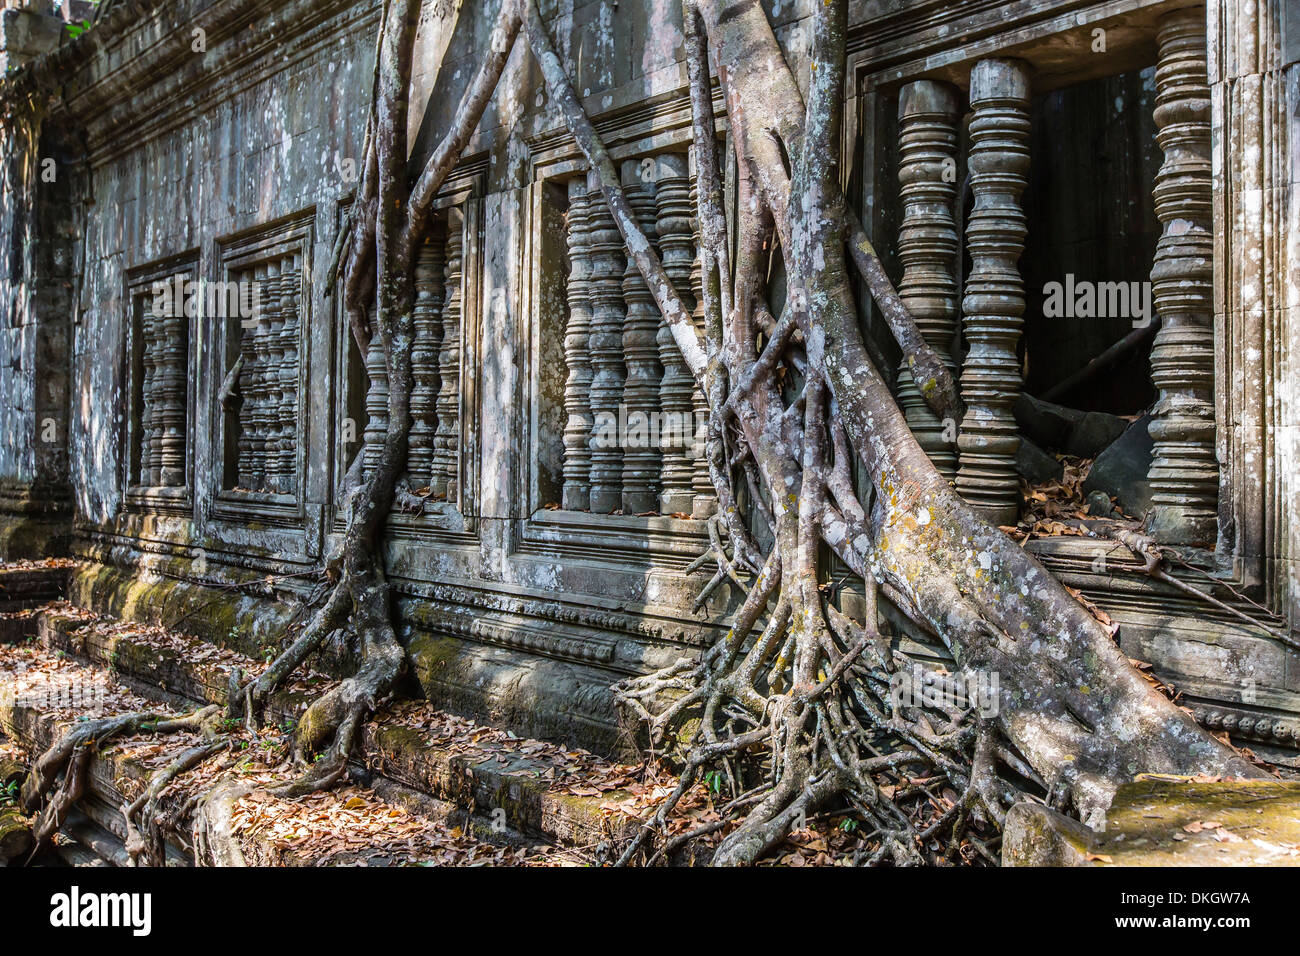 Beng Mealea Tempel, überwuchert und herunterfallen, Angkor, UNESCO-Weltkulturerbe, Provinz Siem Reap, Kambodscha, Südost-Asien Stockfoto